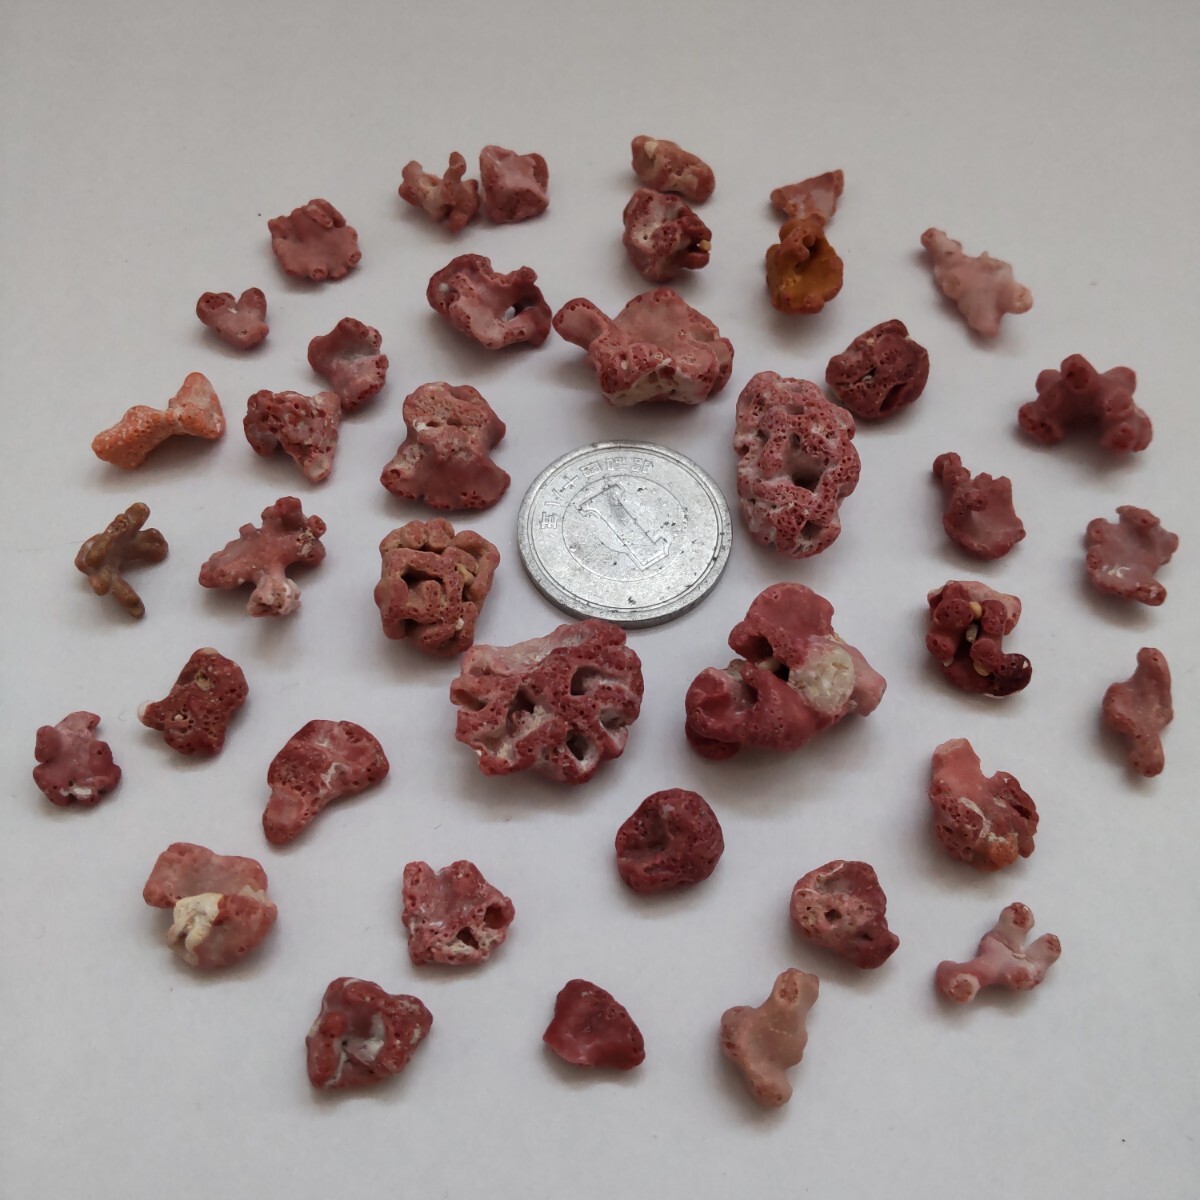 赤珊瑚 赤サンゴ 珊瑚 サンゴ 欠片 カケラ かけら セット 貝がら 貝殻 貝 微小貝 天然 ハンドメイド 材料 素材 パーツ 工作 コレクションの画像5